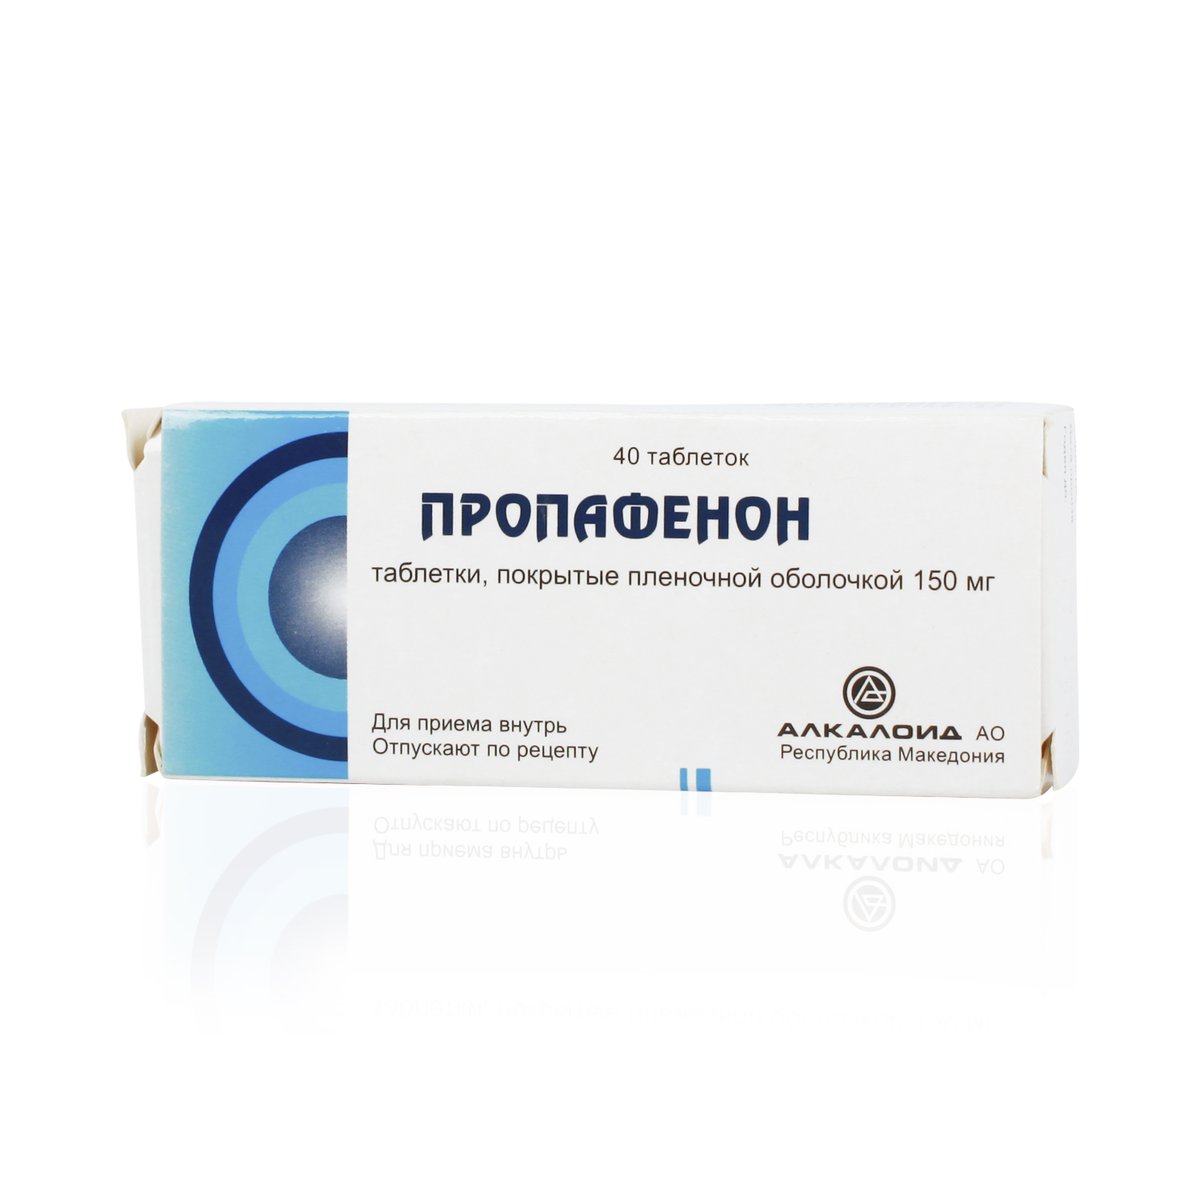 Пропафенон (таблетки, 40 шт, 150 мг) - цена,  онлайн  .